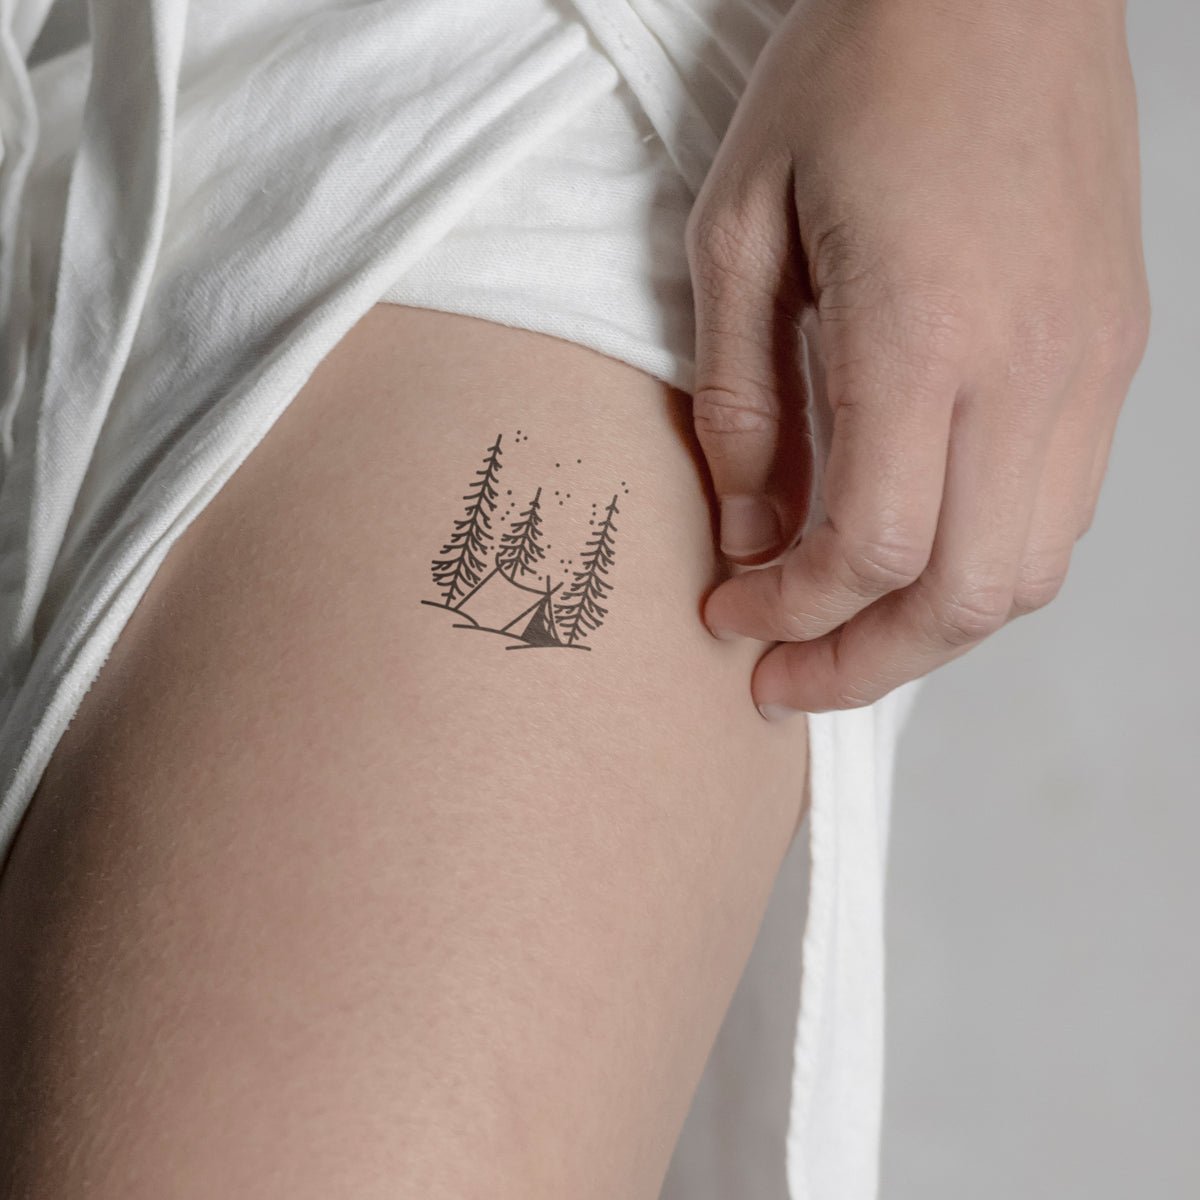 Tattoo uploaded by Mariana Groning • Green tree tattoo #tattoo  #marianagroning #karmatattoo #cdmx #MexicoCity #watercolor  #watercolortattoo #watercolortattooartist #tree • Tattoodo